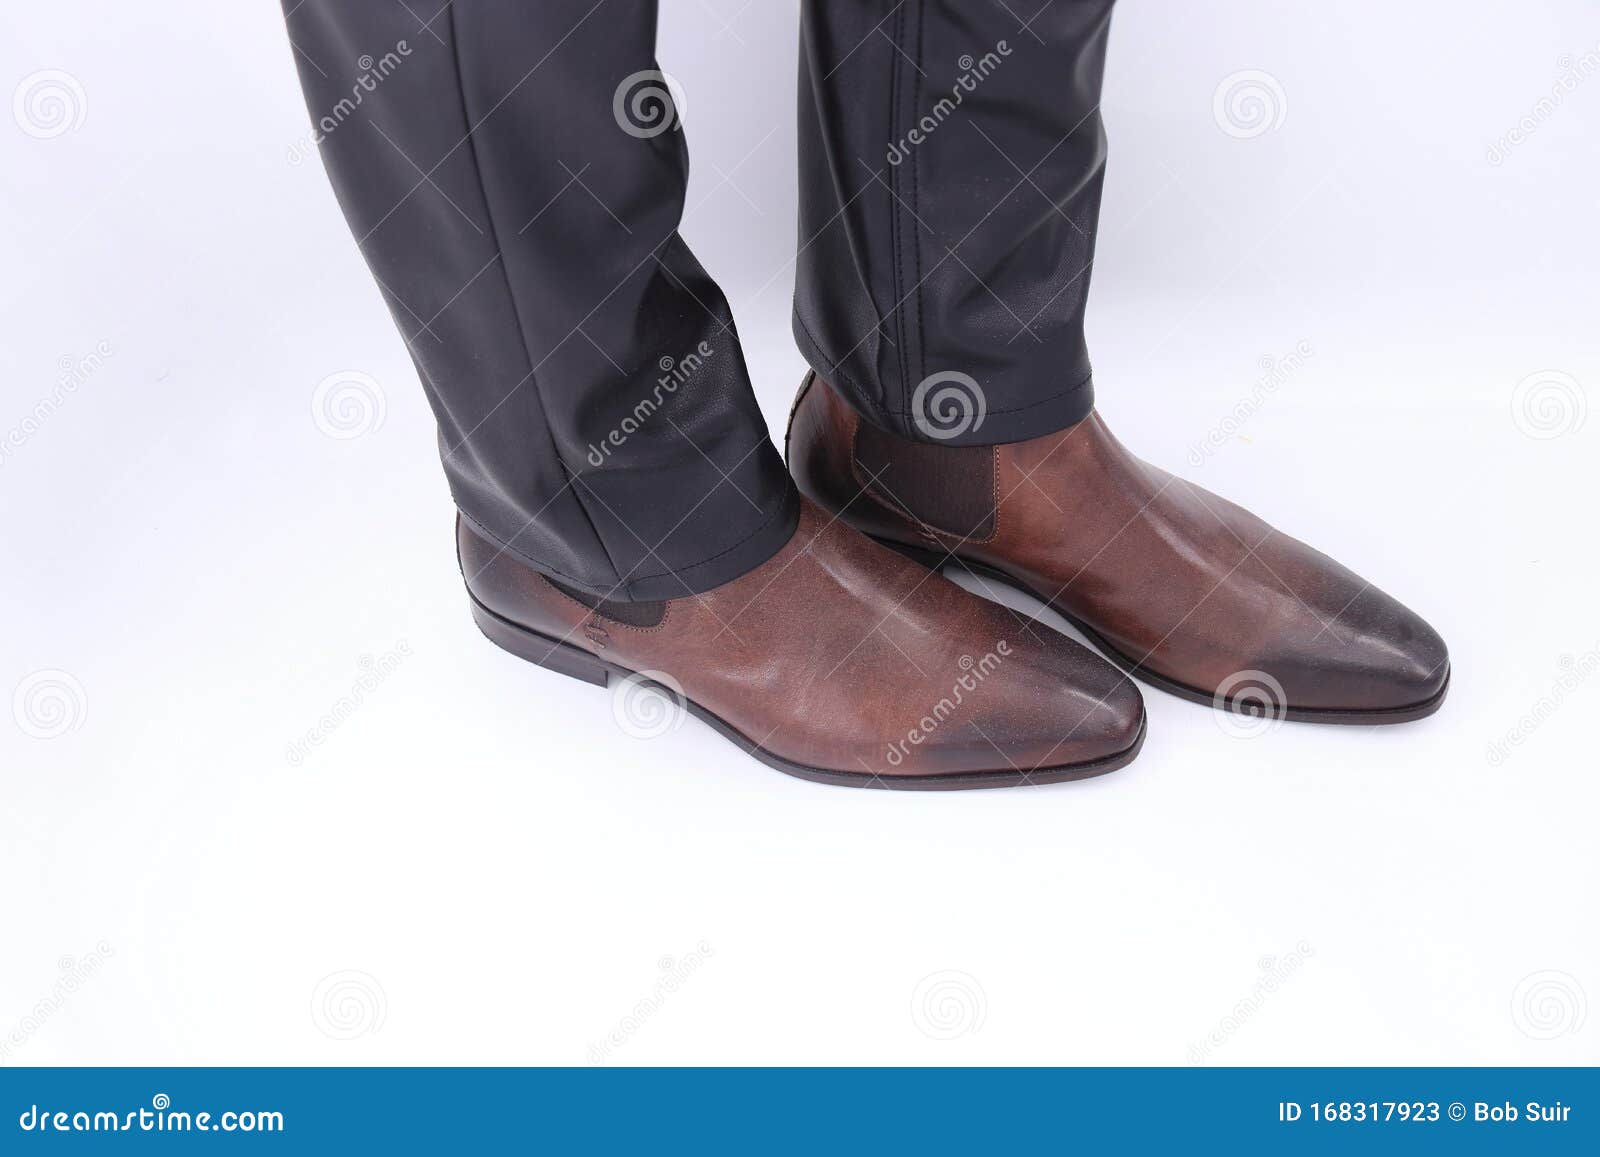 modern mens boots